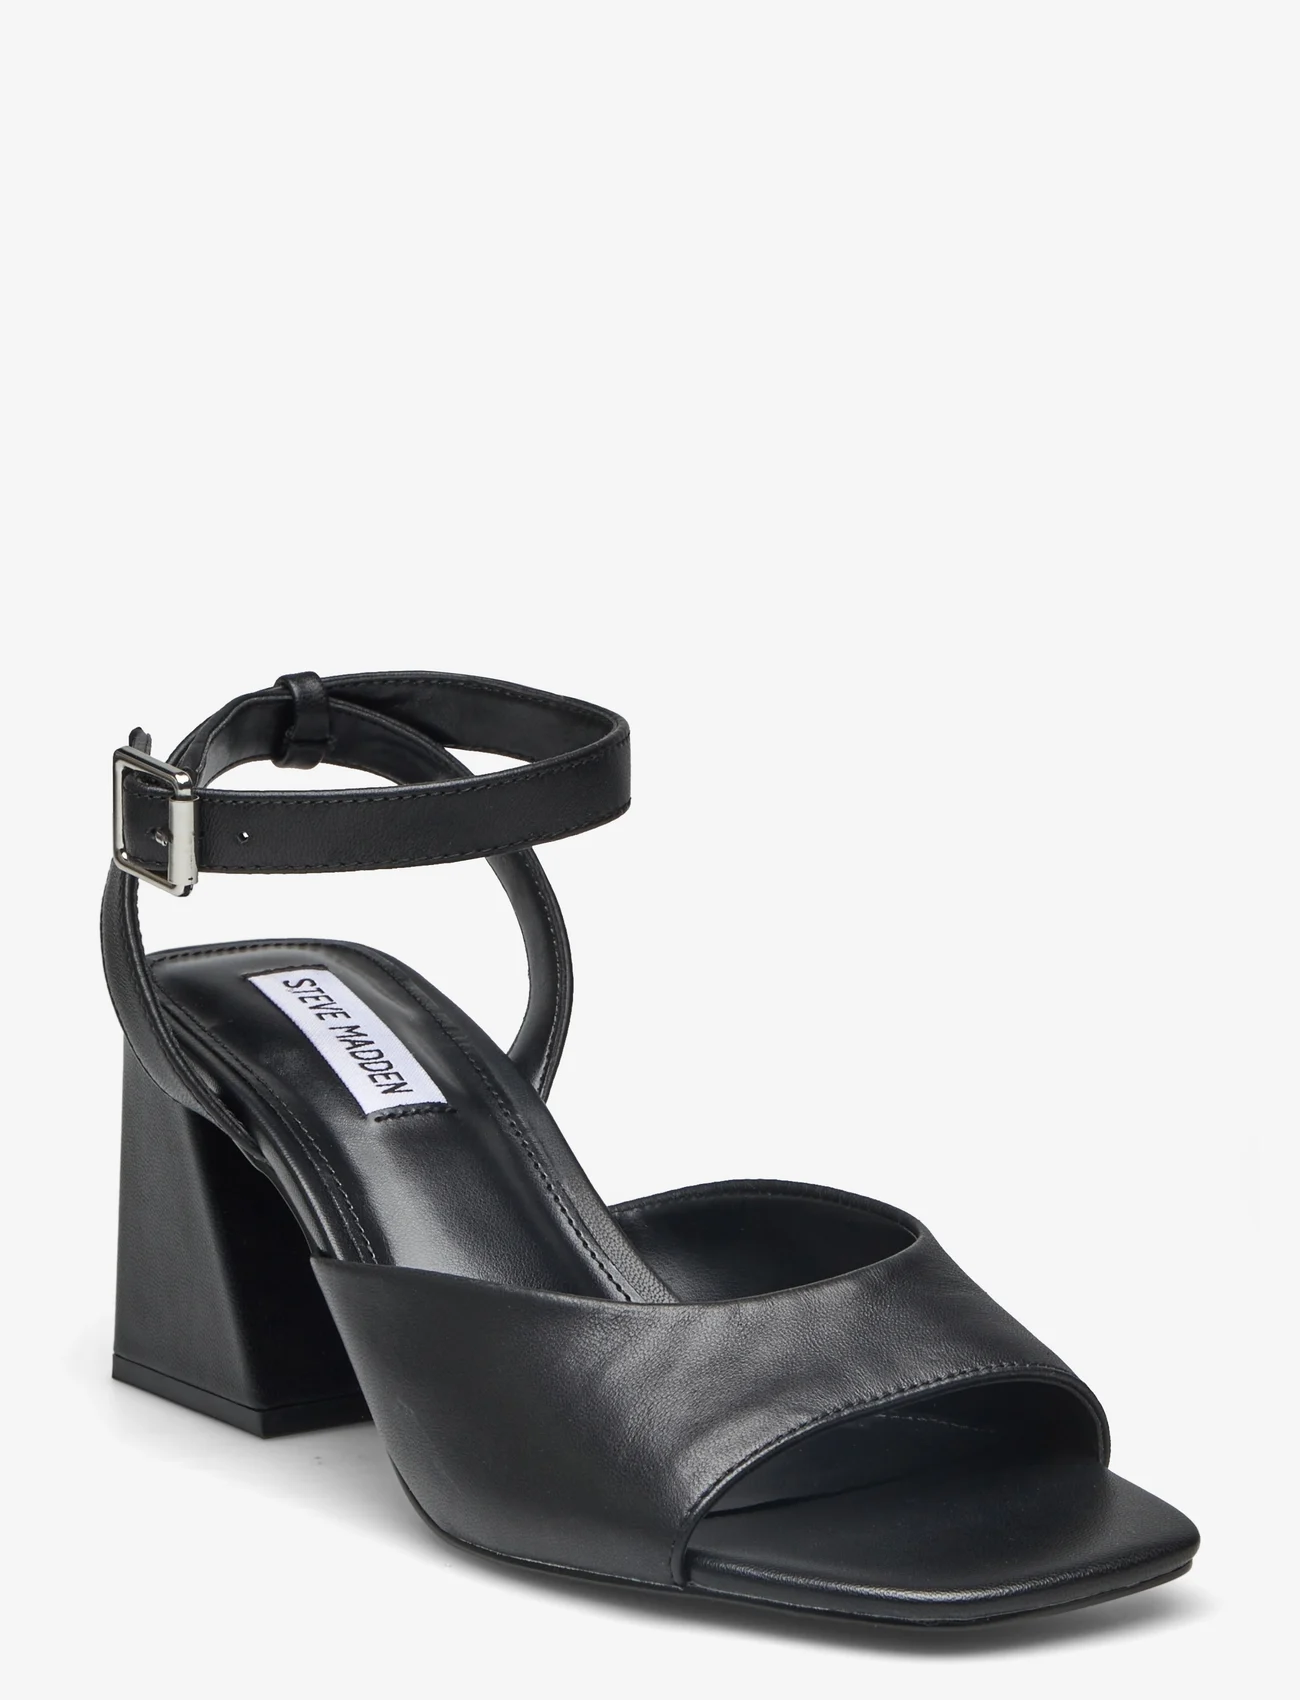 Steve Madden - Glisten Sandal - odzież imprezowa w cenach outletowych - black leather - 0